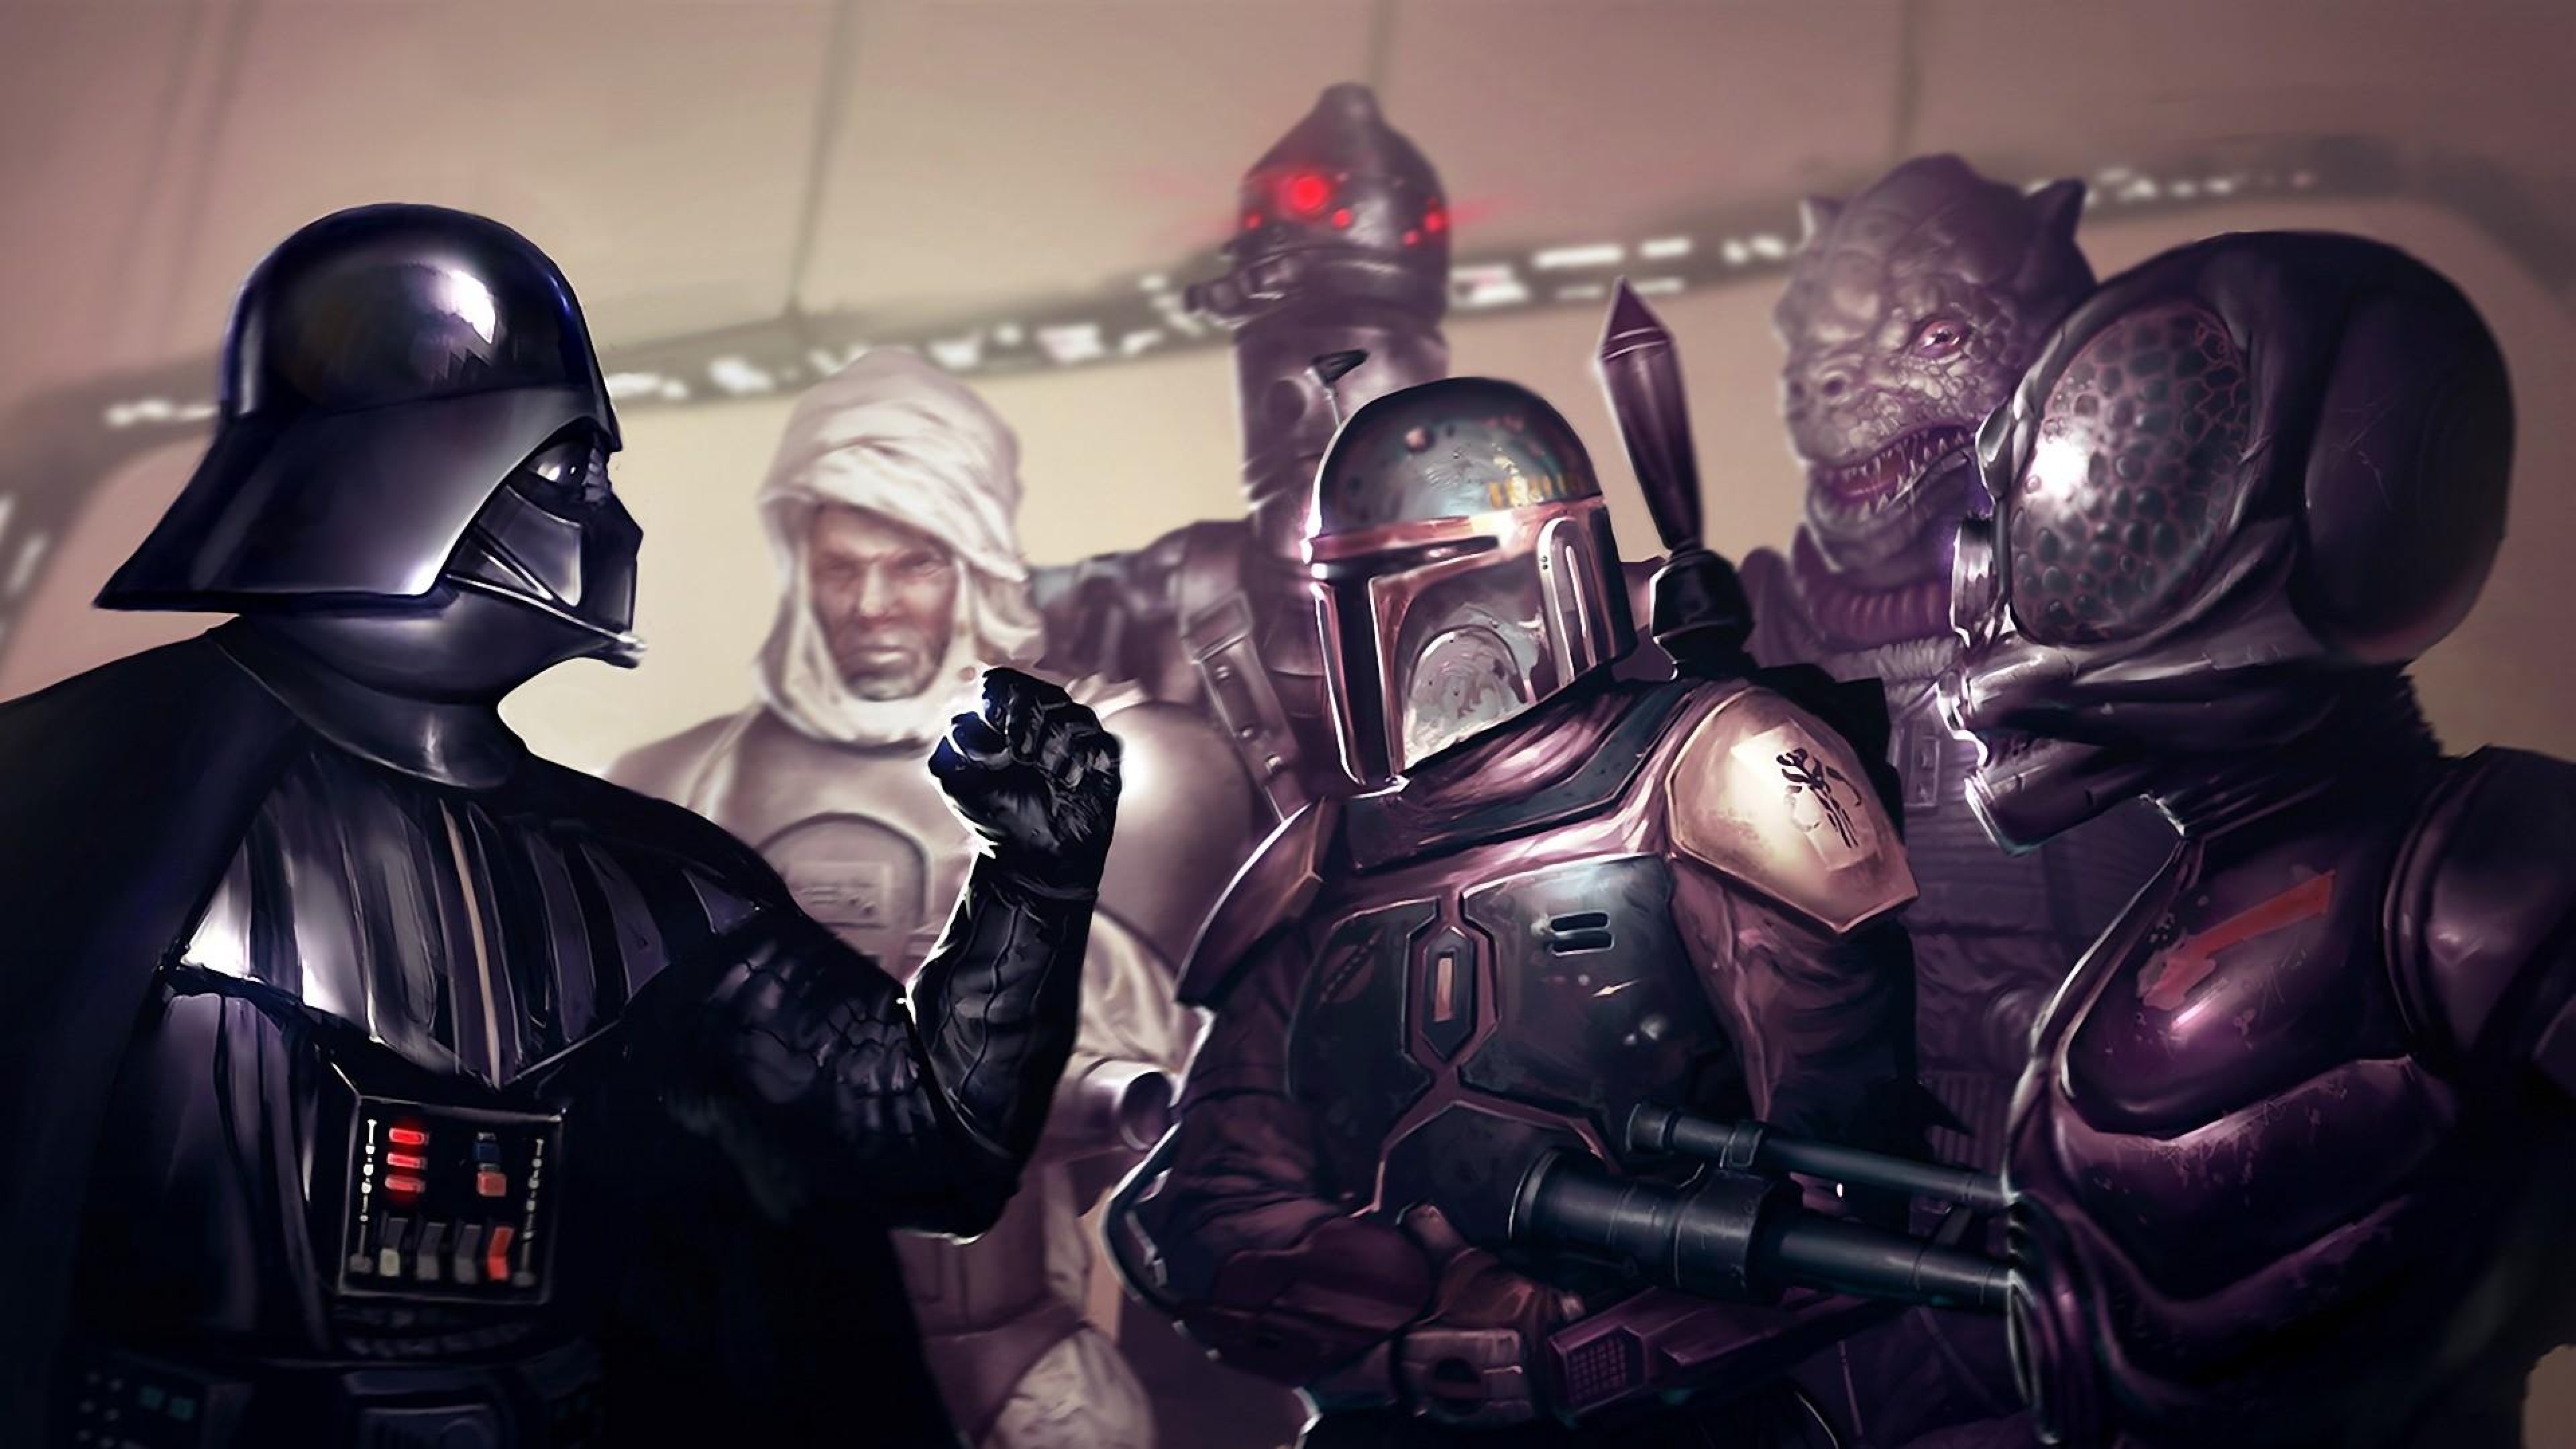 Star Wars Bounty Hunters , HD Wallpaper & Backgrounds